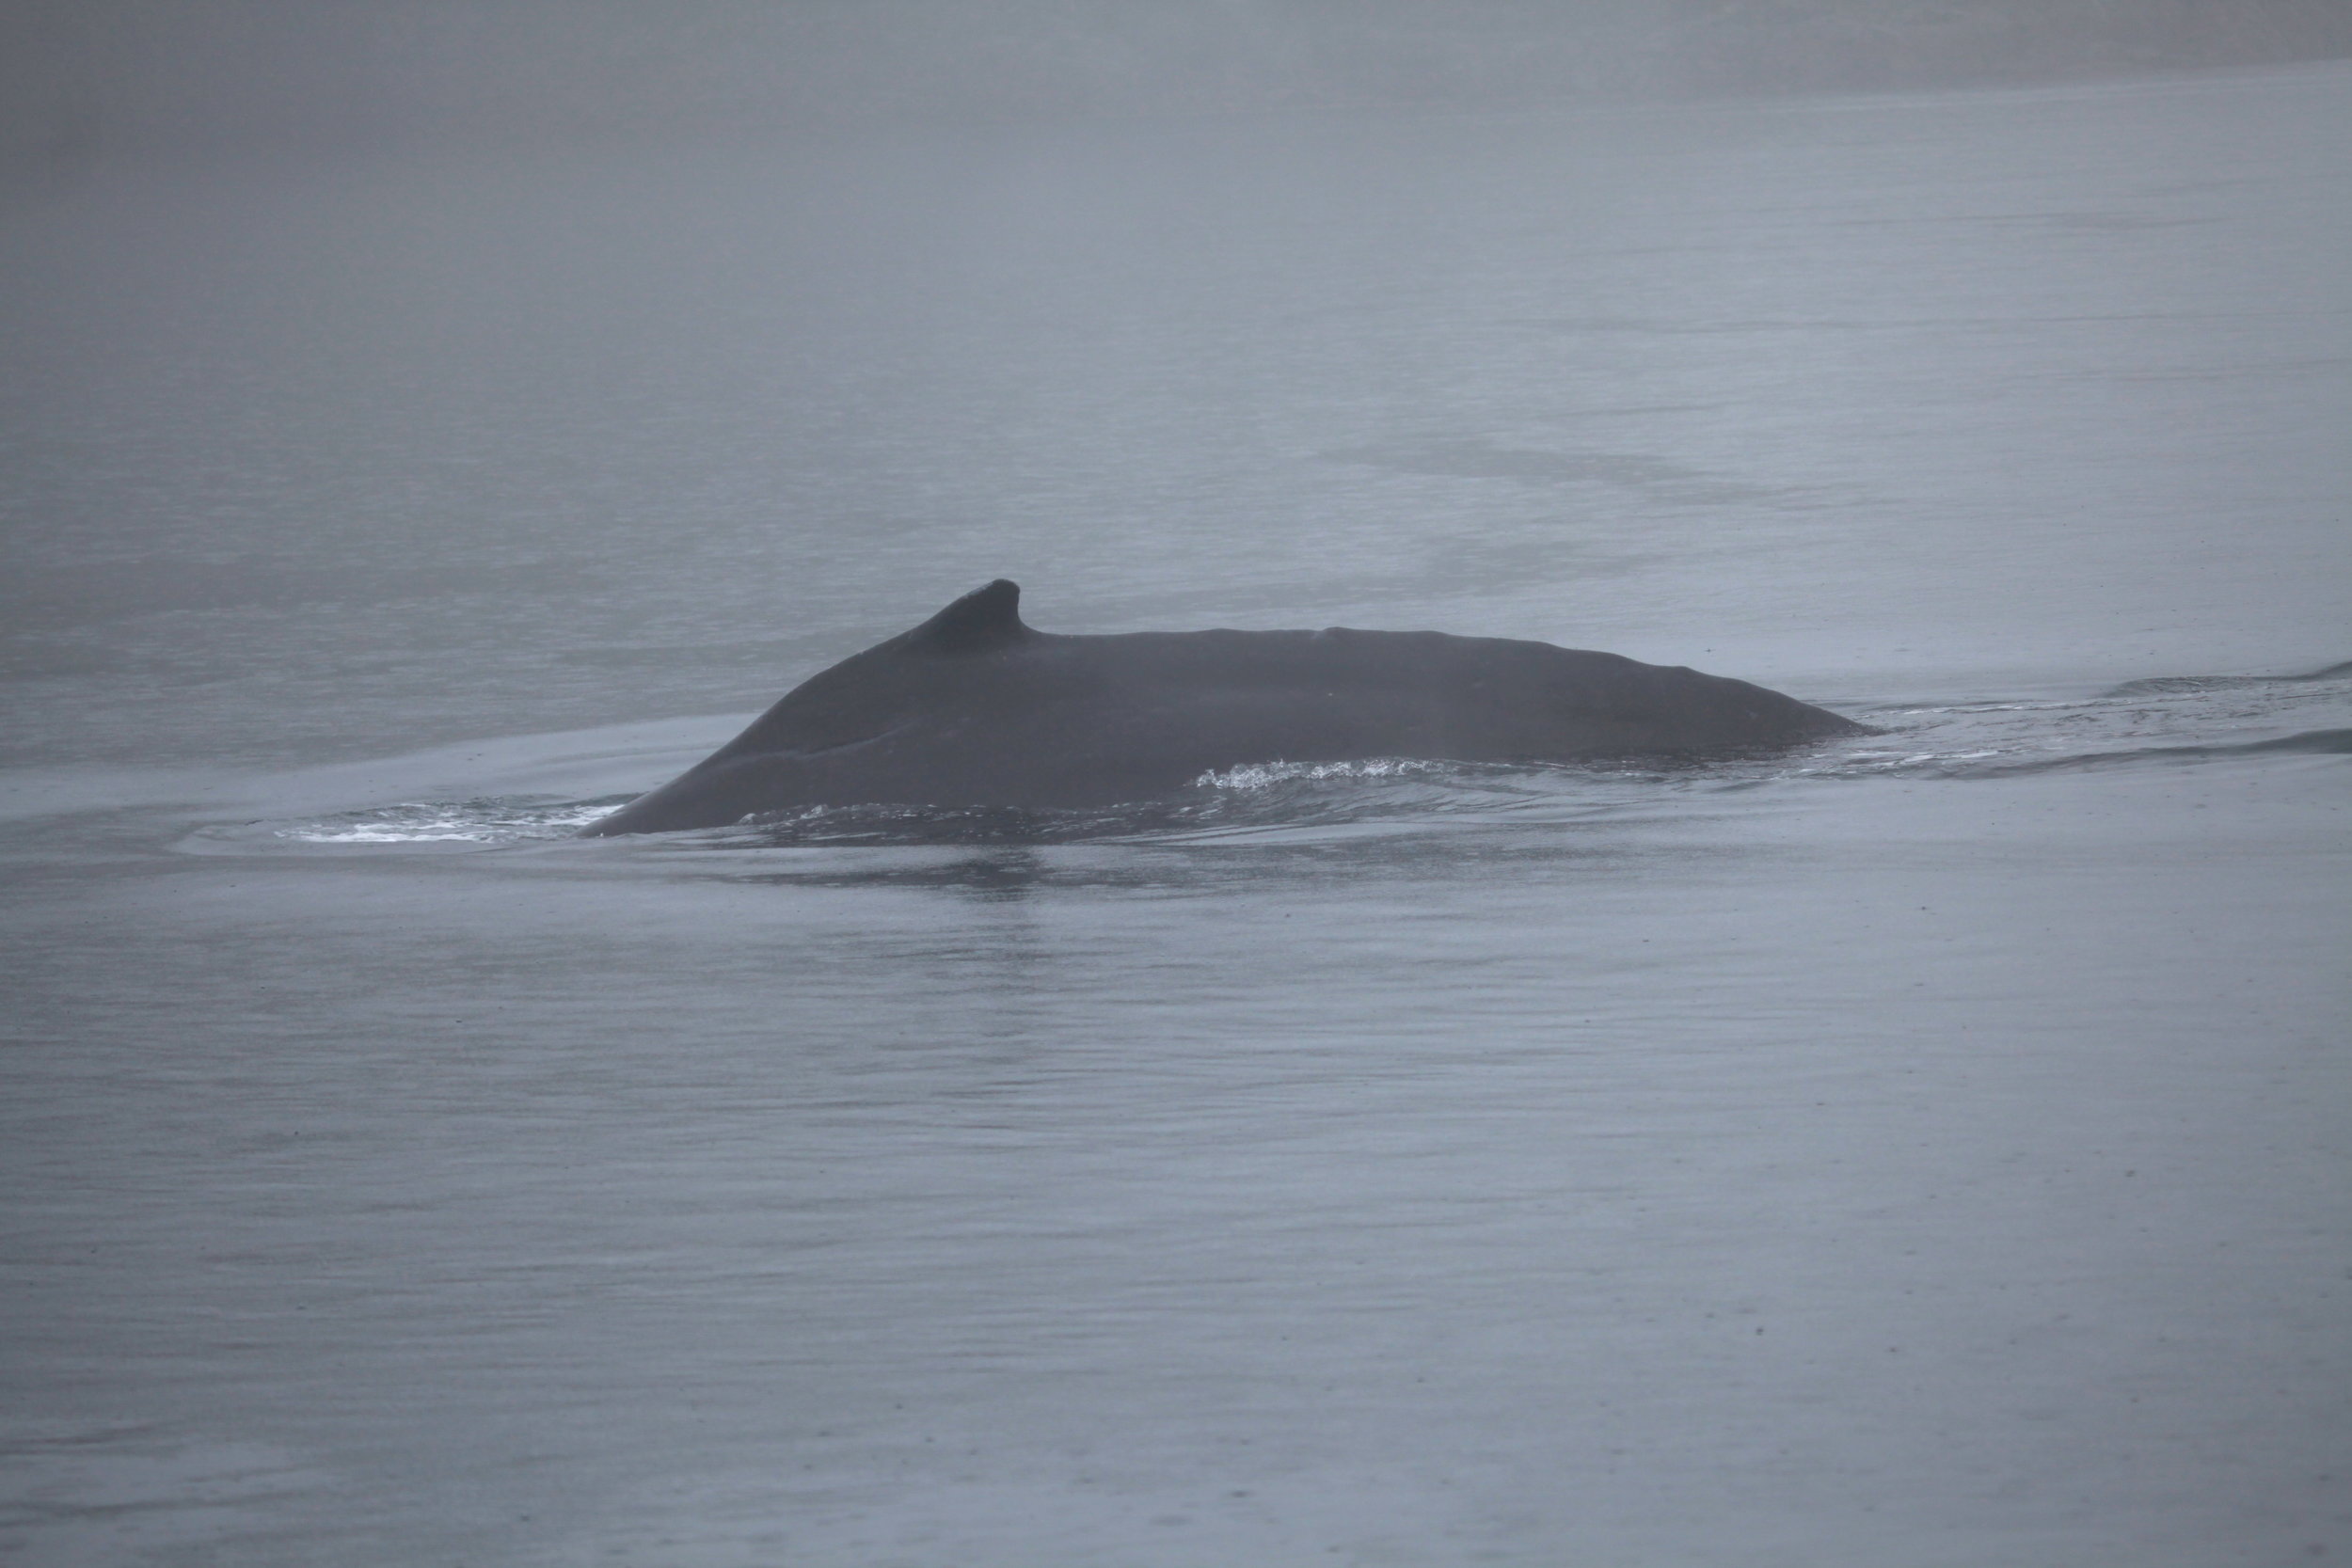 Humpback whale KC - dorsal fin